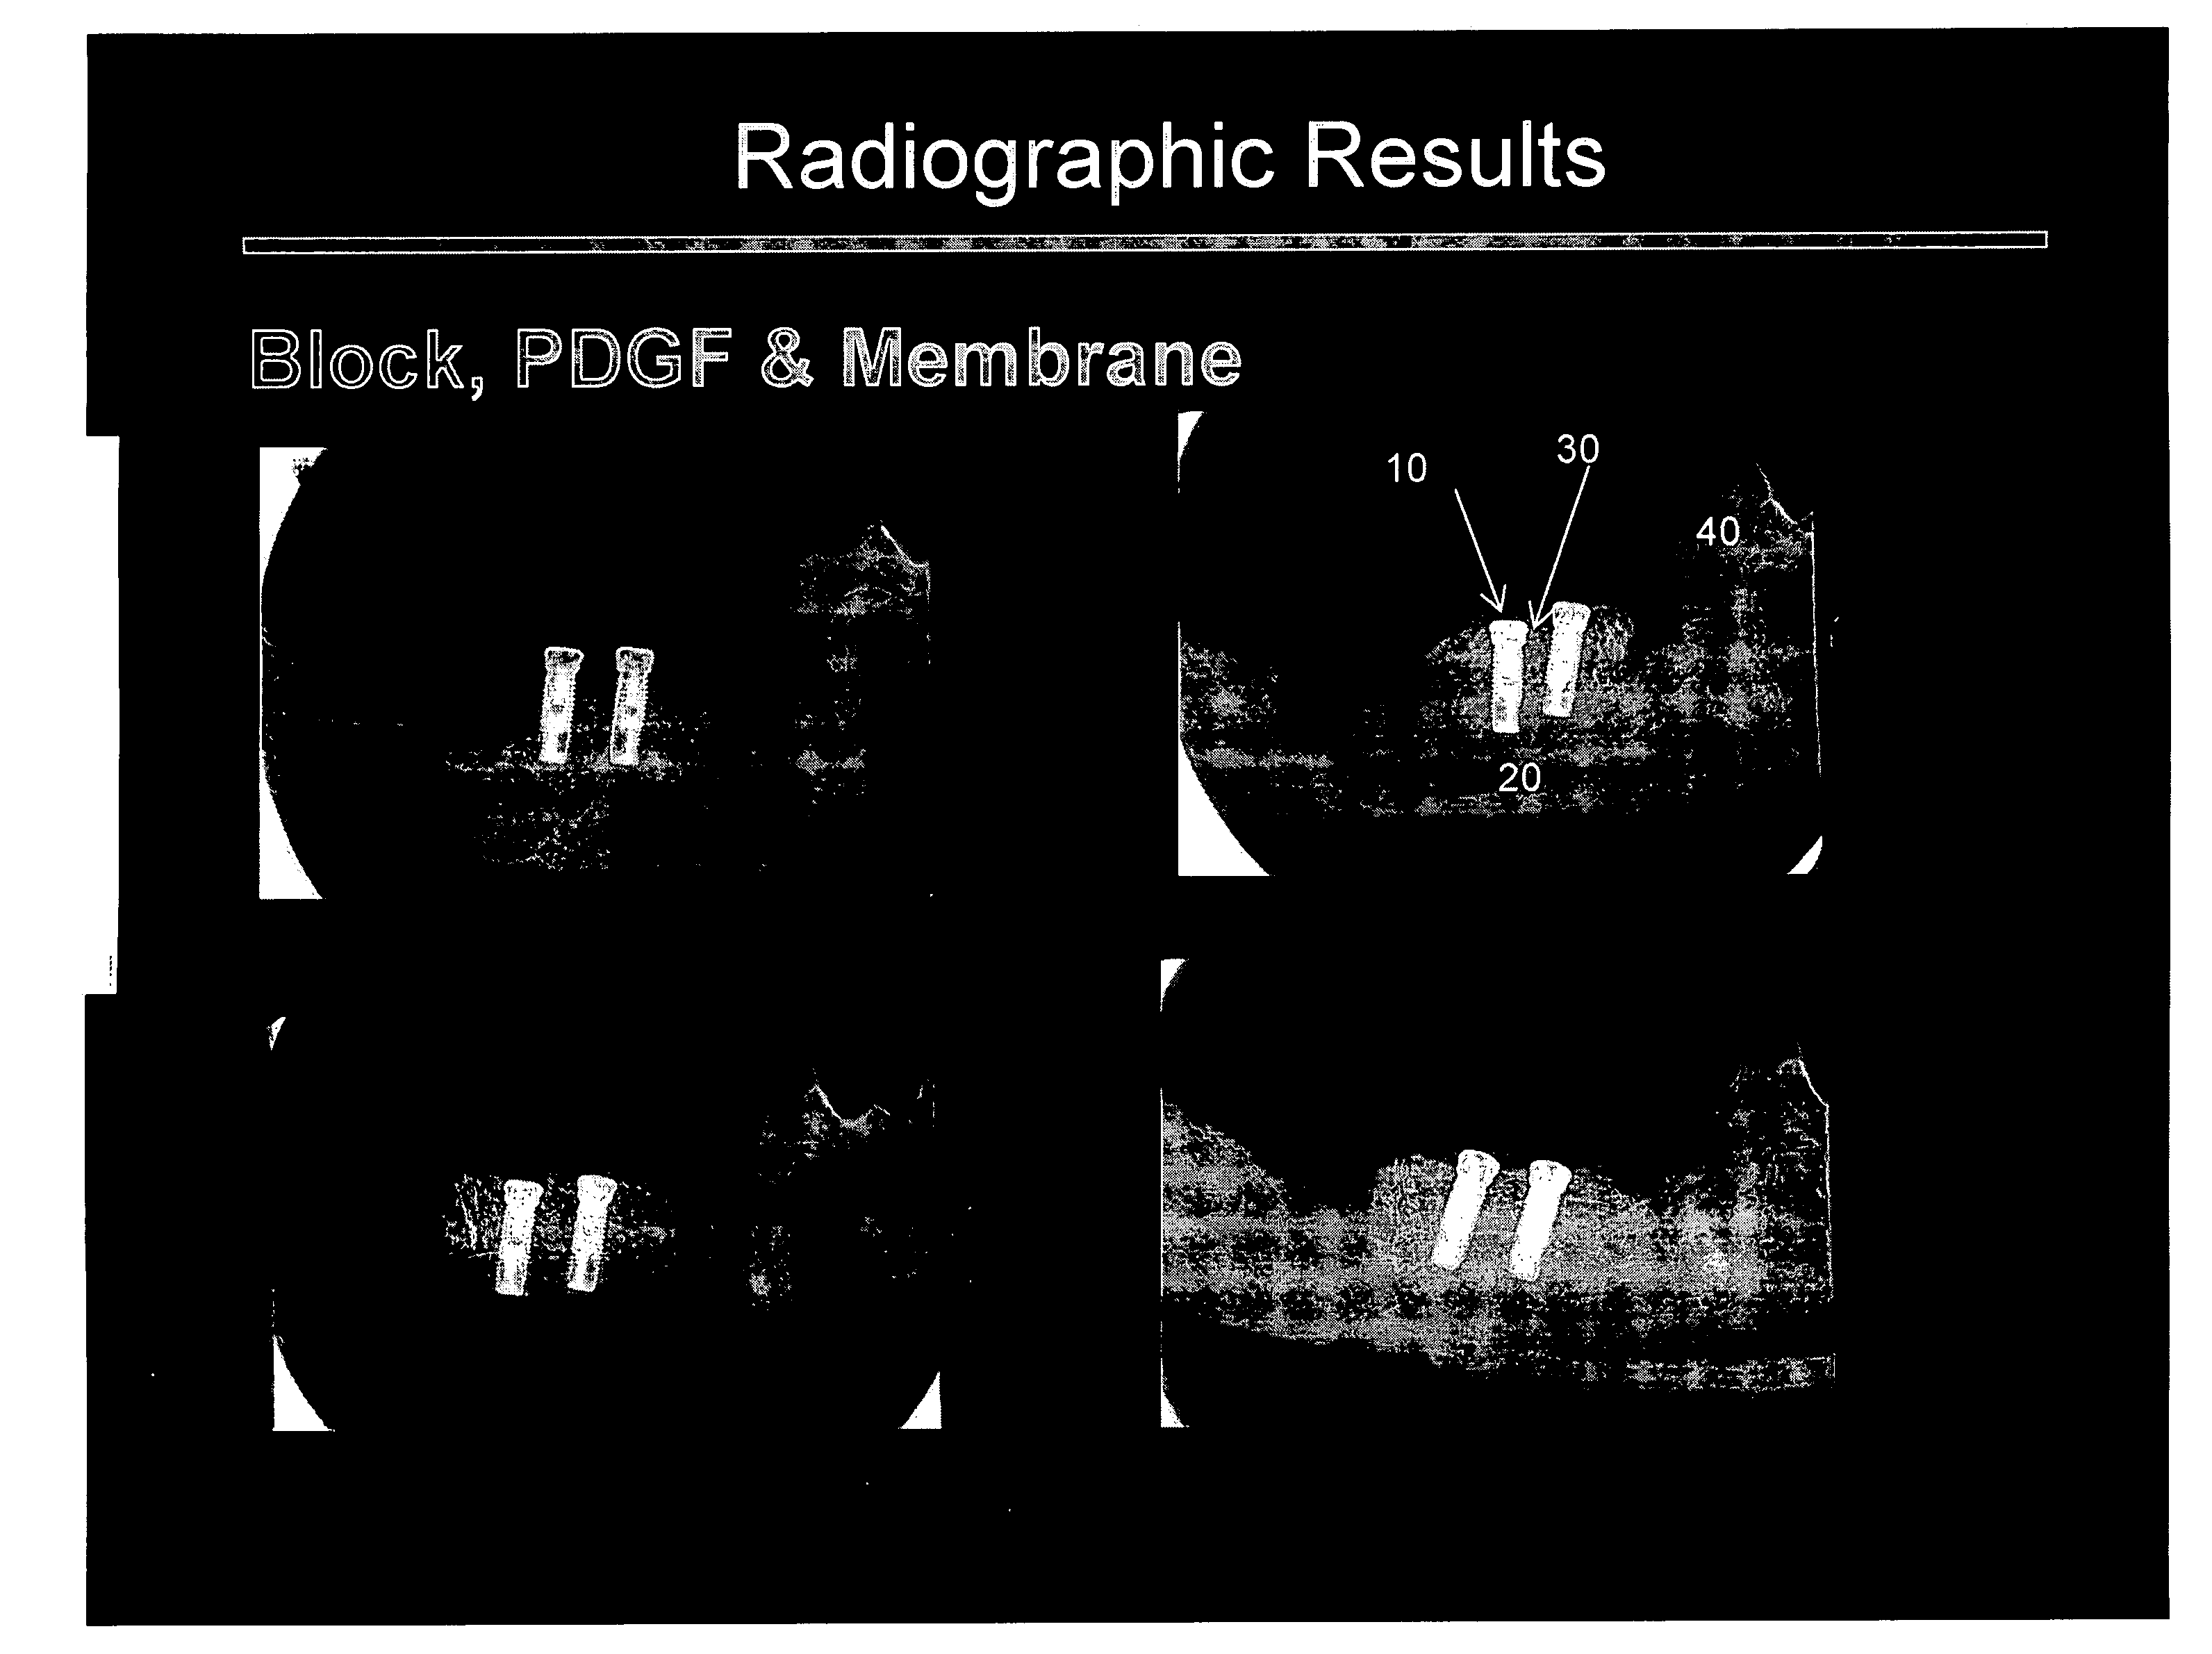 Maxillofacial bone augmentation using rhPDGF-BB and a biocompatible matrix